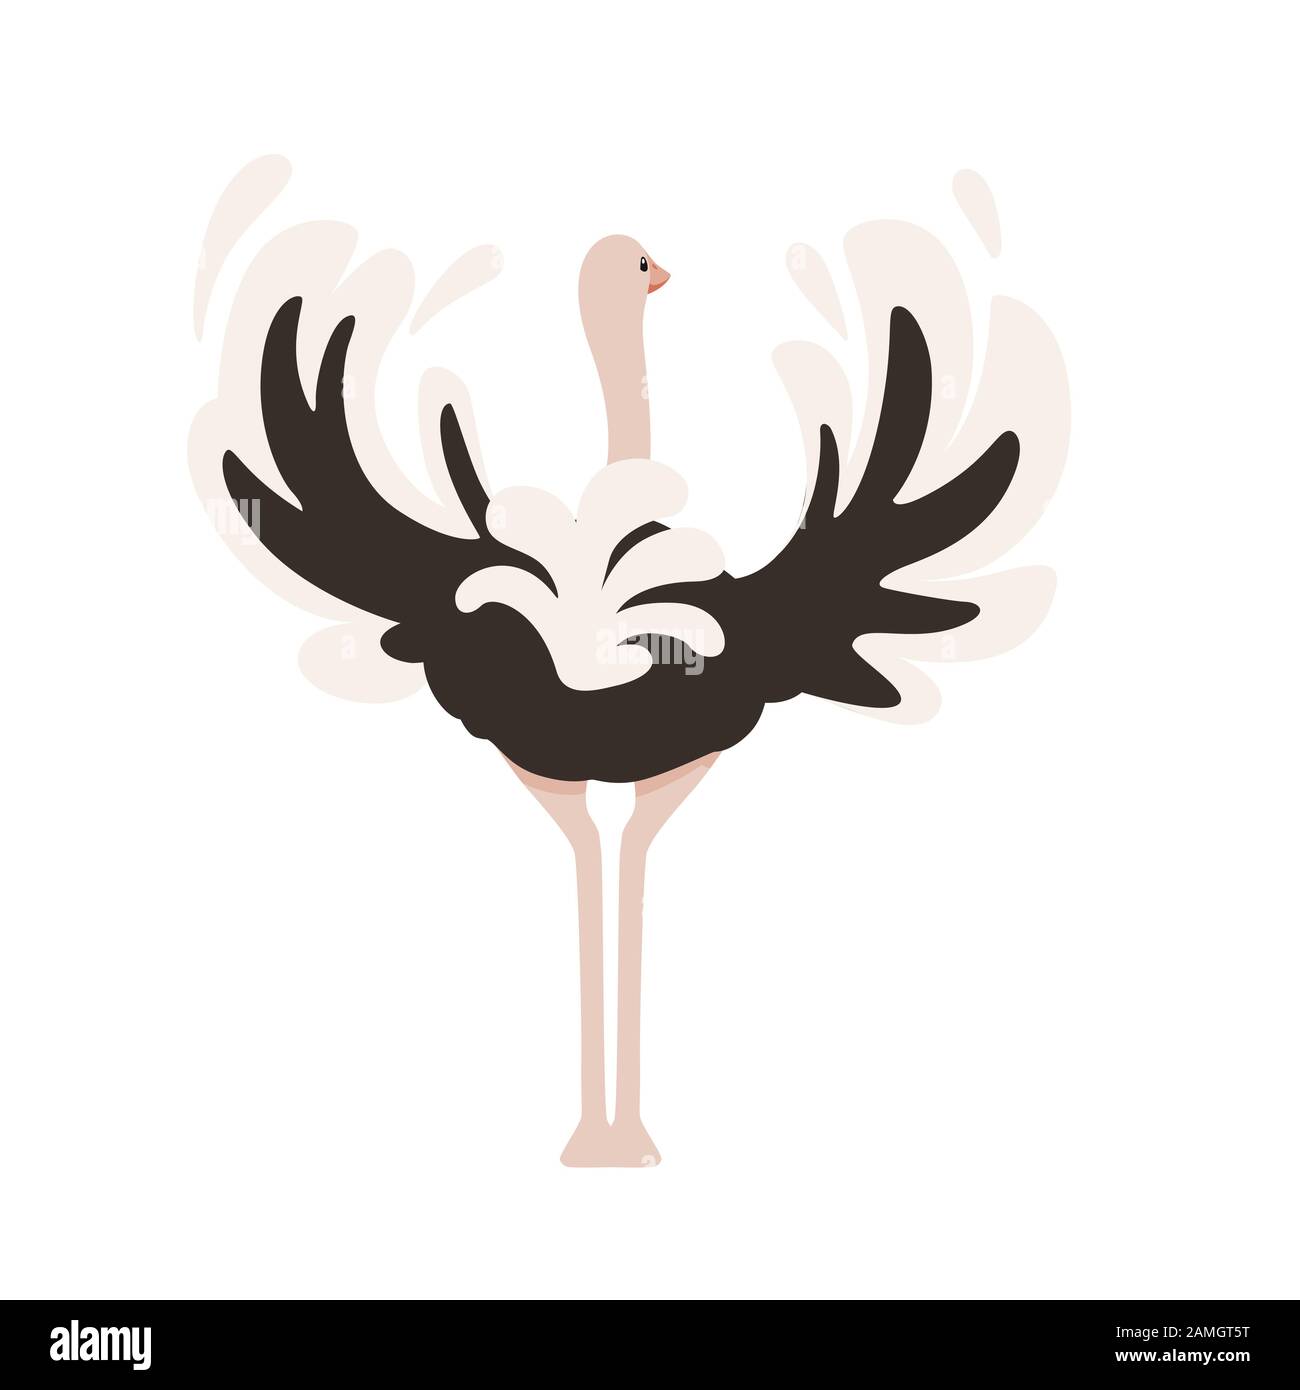 Mignonne autruche rester sur deux jambes afrique sans flightless oiseau caricature animal design plate illustration vectorielle isolée sur fond blanc. Illustration de Vecteur